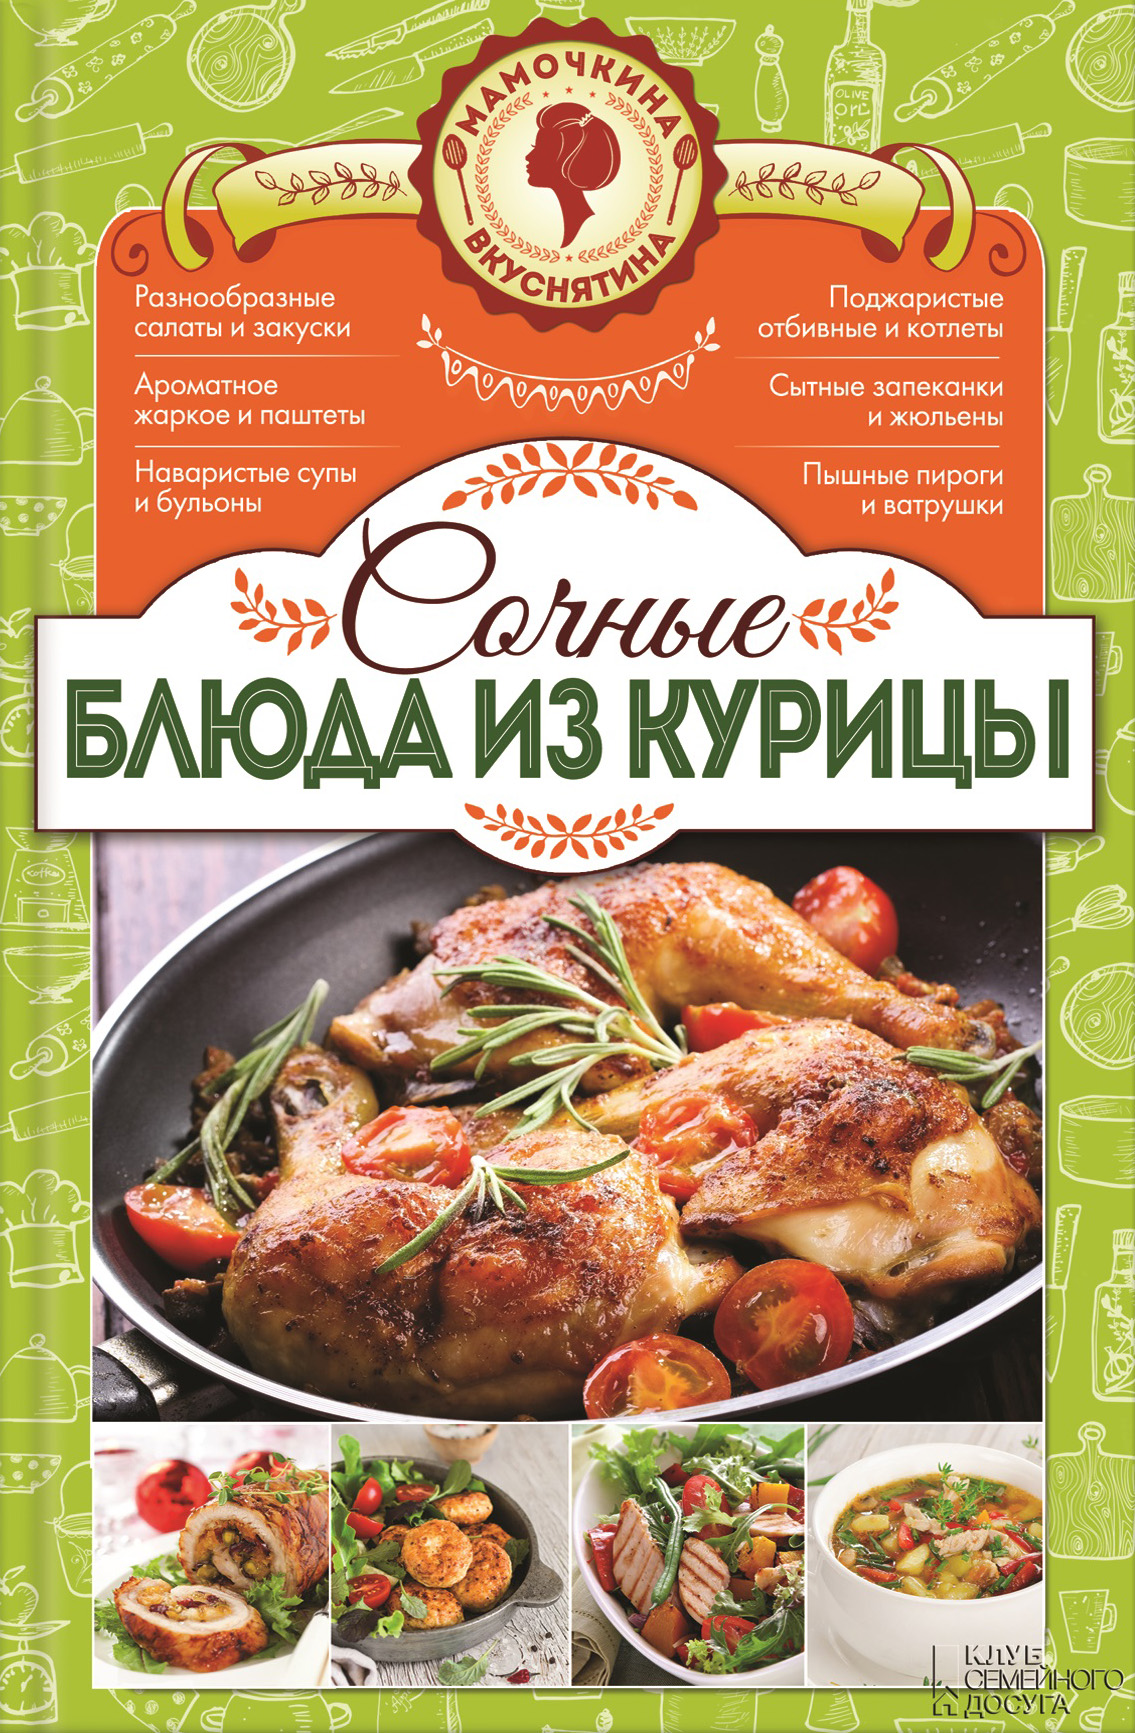 Книга Сочные блюда из курицы из серии , созданная Наталия Попович, может относится к жанру Кулинария. Стоимость электронной книги Сочные блюда из курицы с идентификатором 21586540 составляет 127.00 руб.